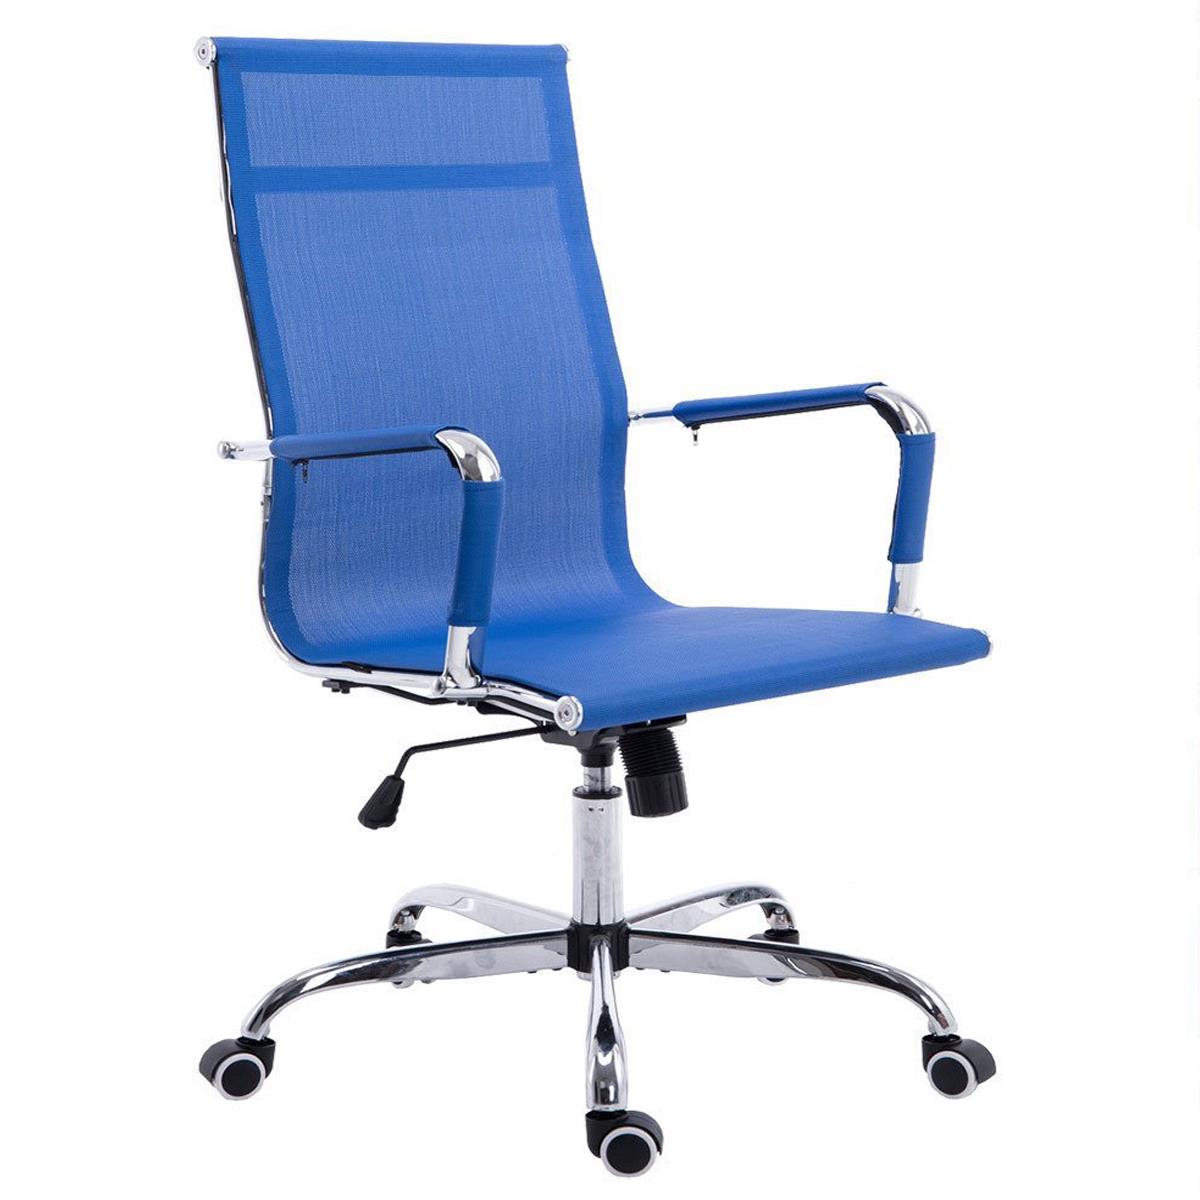 Chaise de bureau ITALIE, Structure Métallique, Magnifique Design en Maille Respirable, Bleu